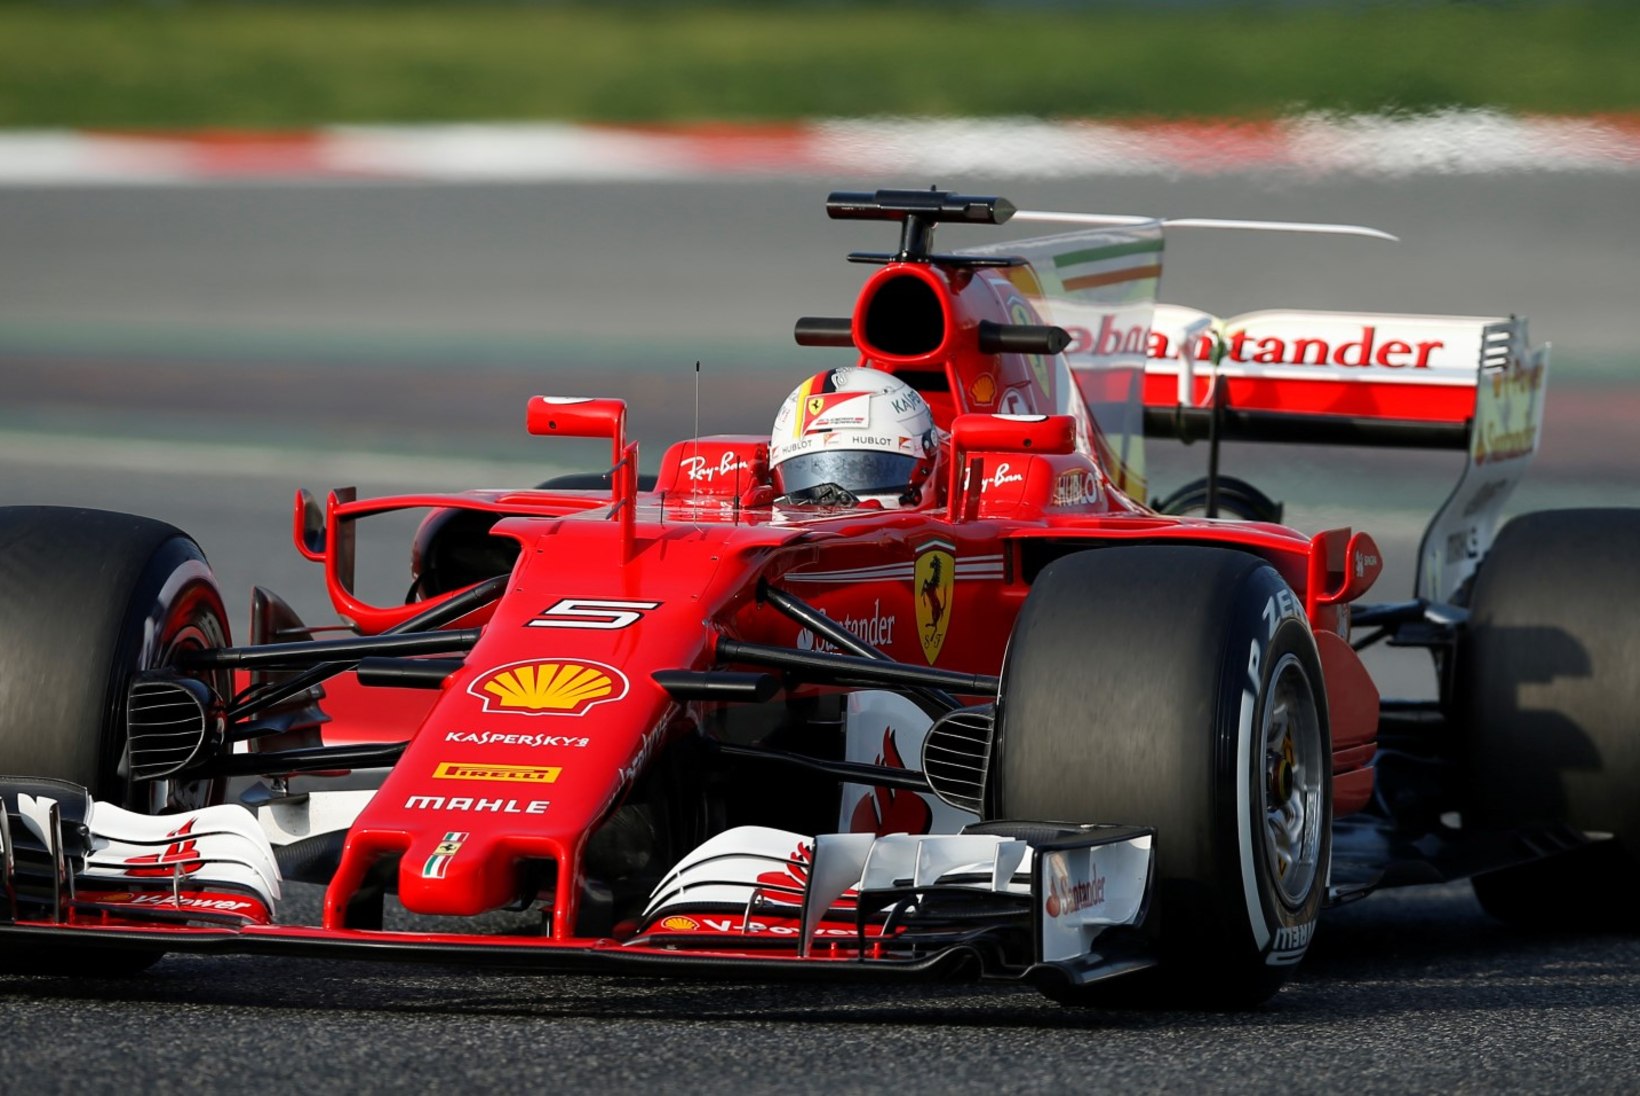 VIDEOD JA FOTOD | Uued ja vinged vormelid pandi esimest korda joonele, eesotsas Ferrari